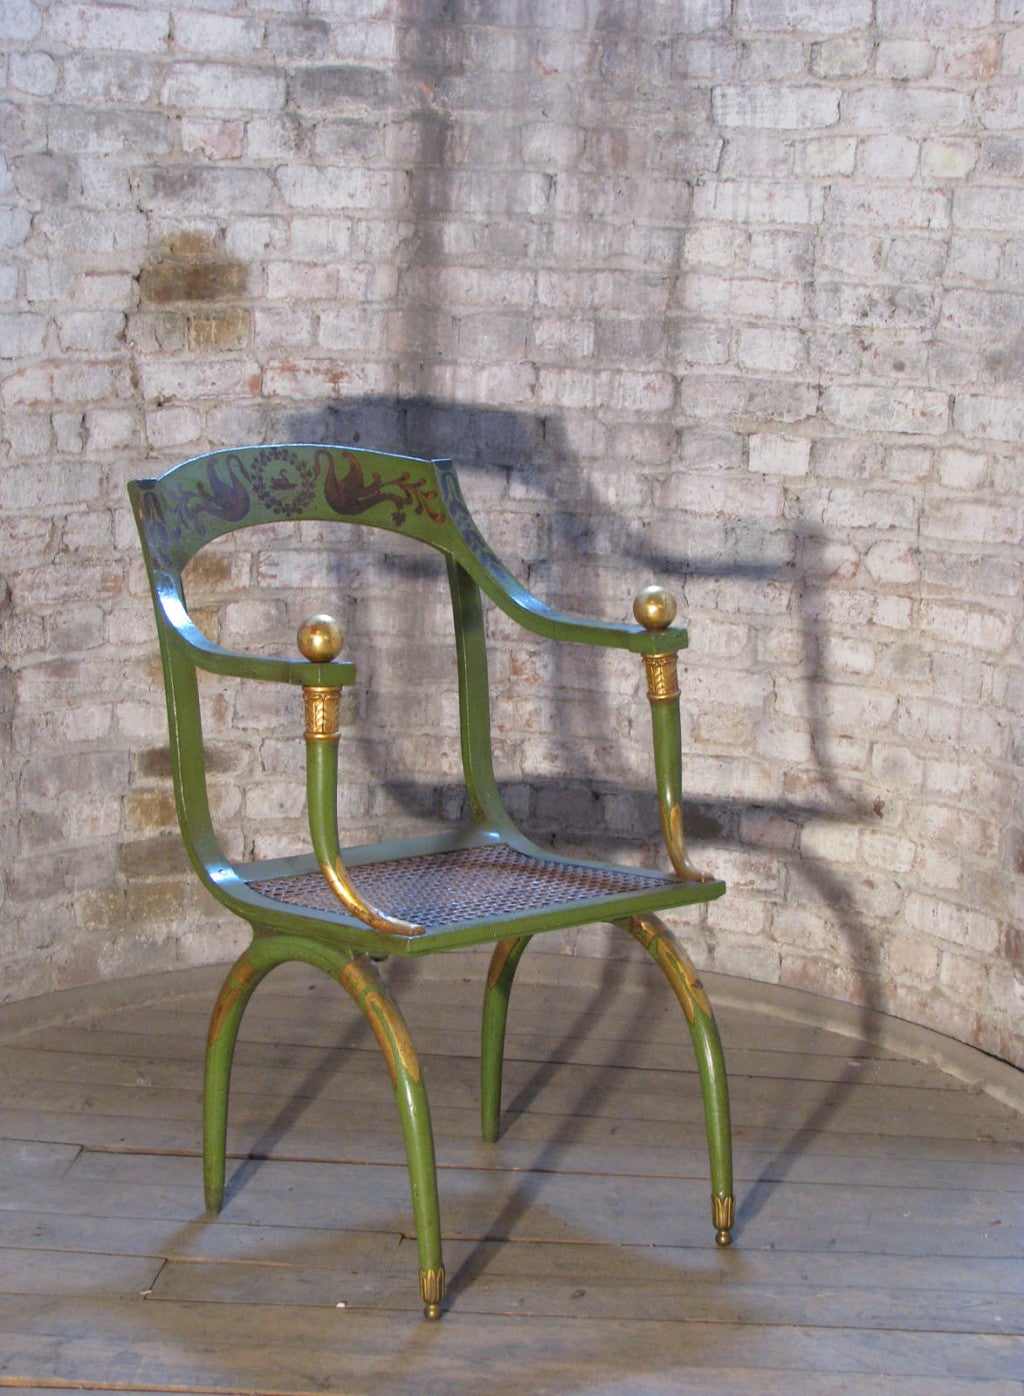 Neoklassizistischer, grün lackierter und vergoldeter Sessel mit Rohrsitz.
Nach einem Modell von Jean-Joseph Chapuis.
Die vorderen Beine haben ihre Messingrollen behalten, bei den hinteren Beinen fehlen die Rollen.
